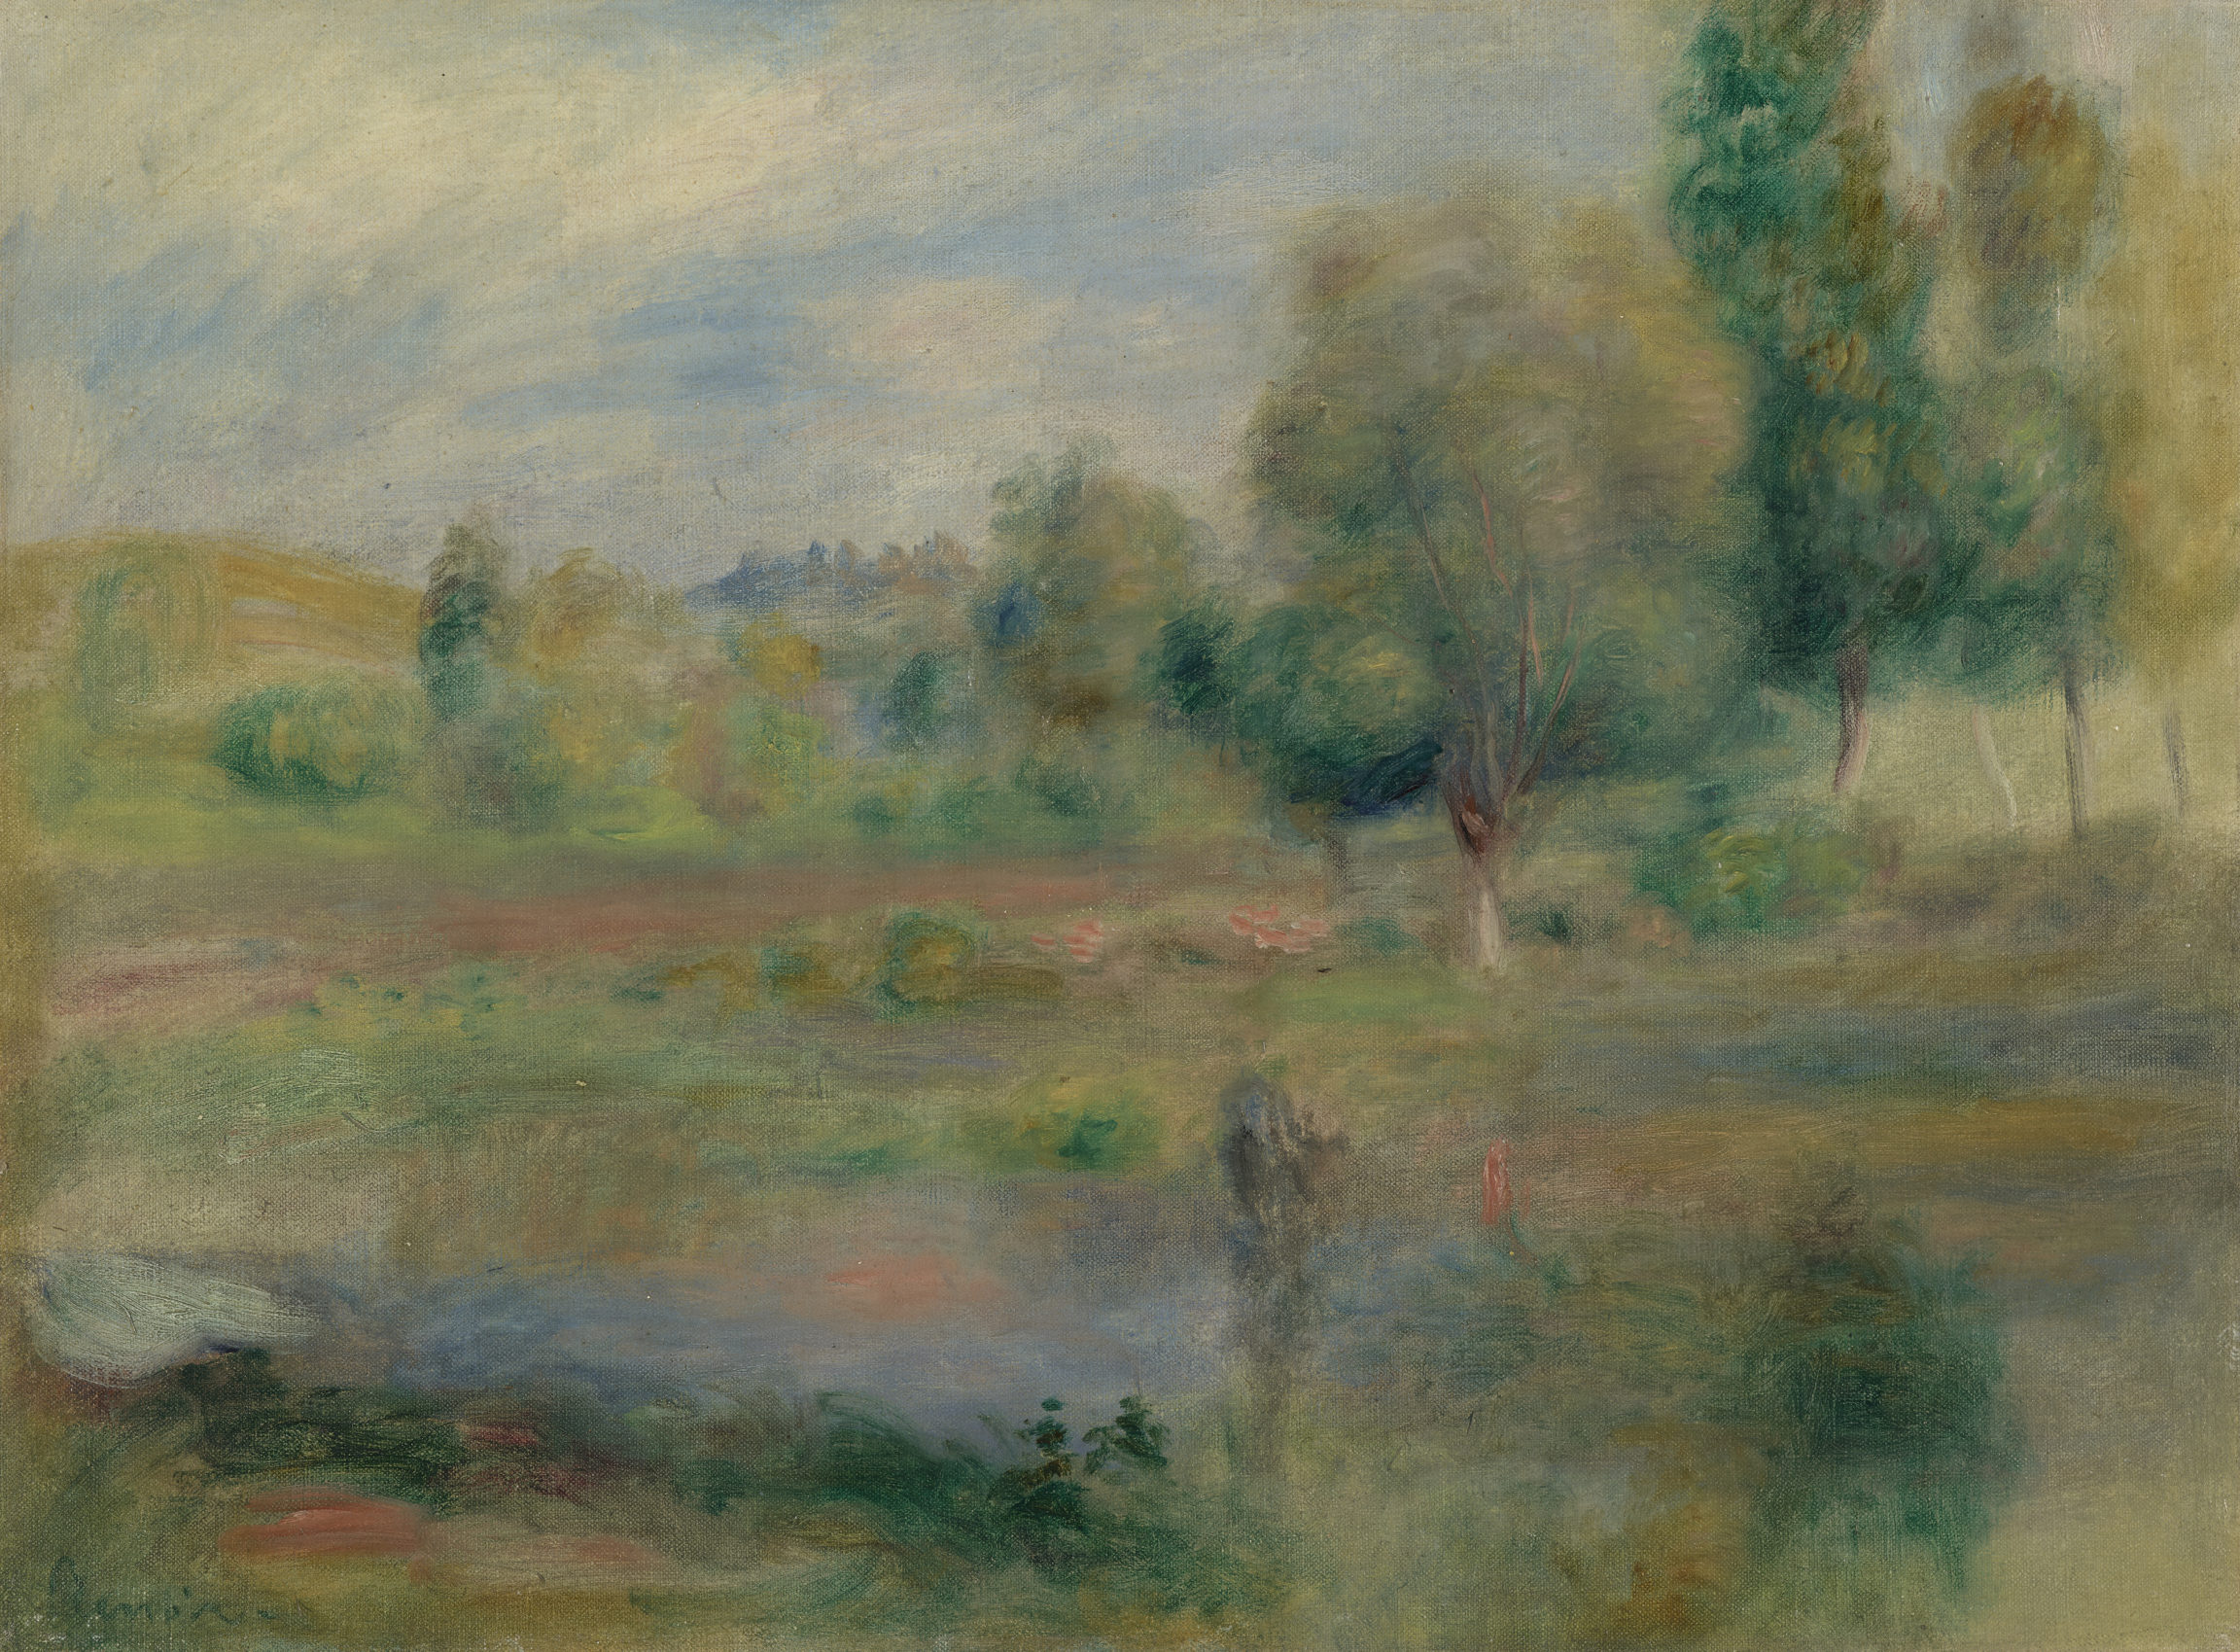 Auguste Renoir , Paysage, le lac (Landscape, the lake), c. 1890 